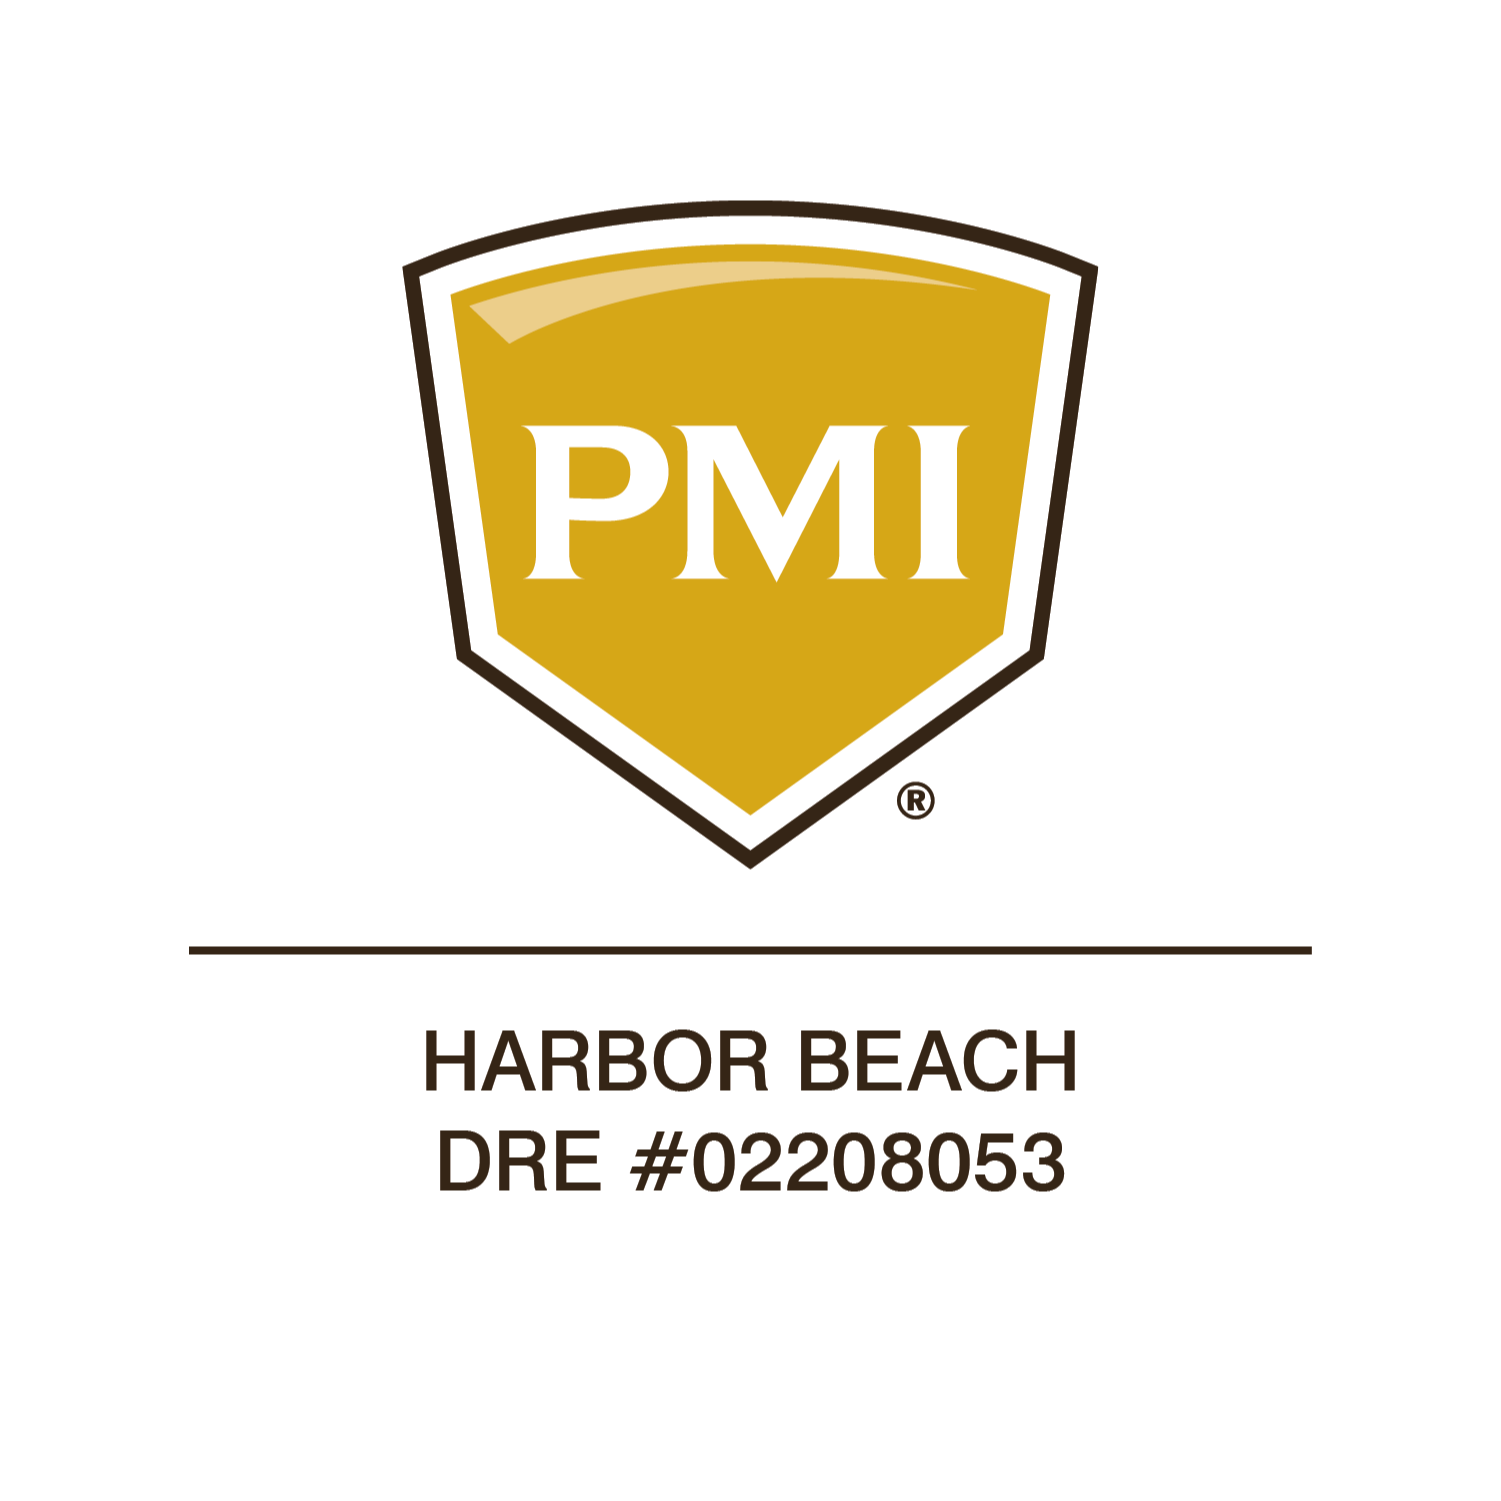 PMI Harbor Beach - Long Beach, CA - (562)371-1158 | ShowMeLocal.com